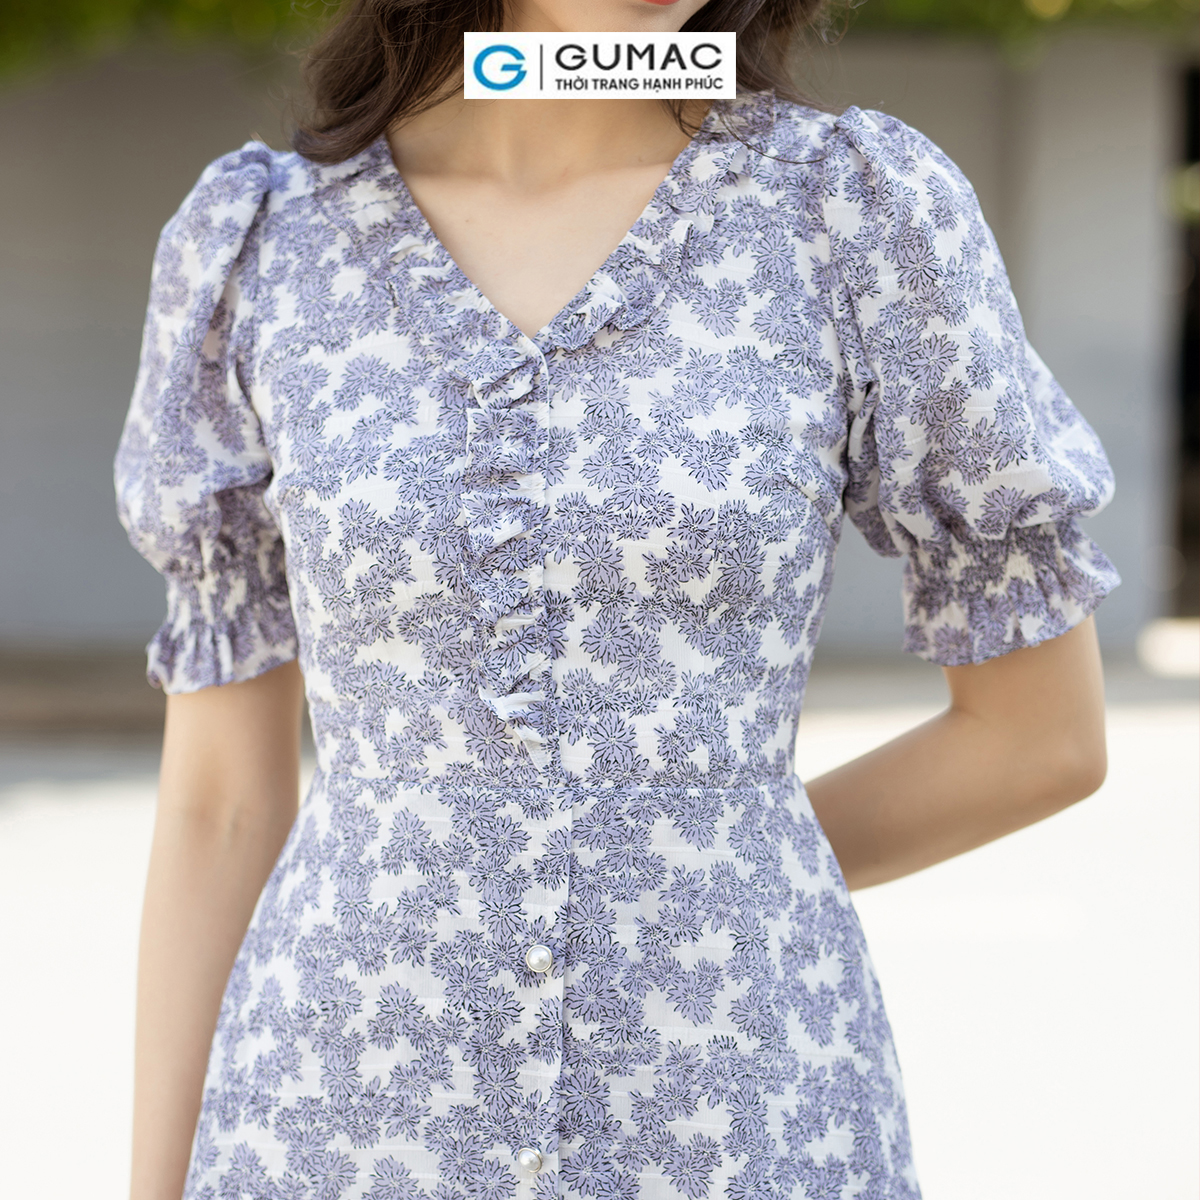 Đầm A họa tiết hoa tay bo nhún thanh lịch nữ tính thời trang GUMAC DD07021